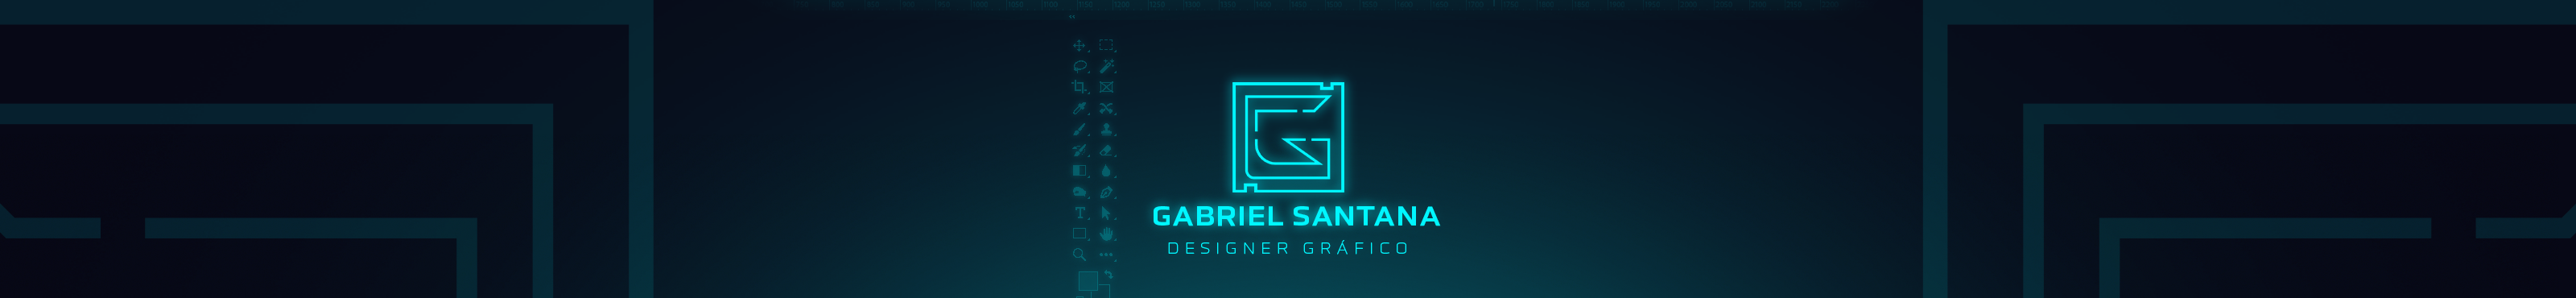 Profil-Banner von Gabriel Santana